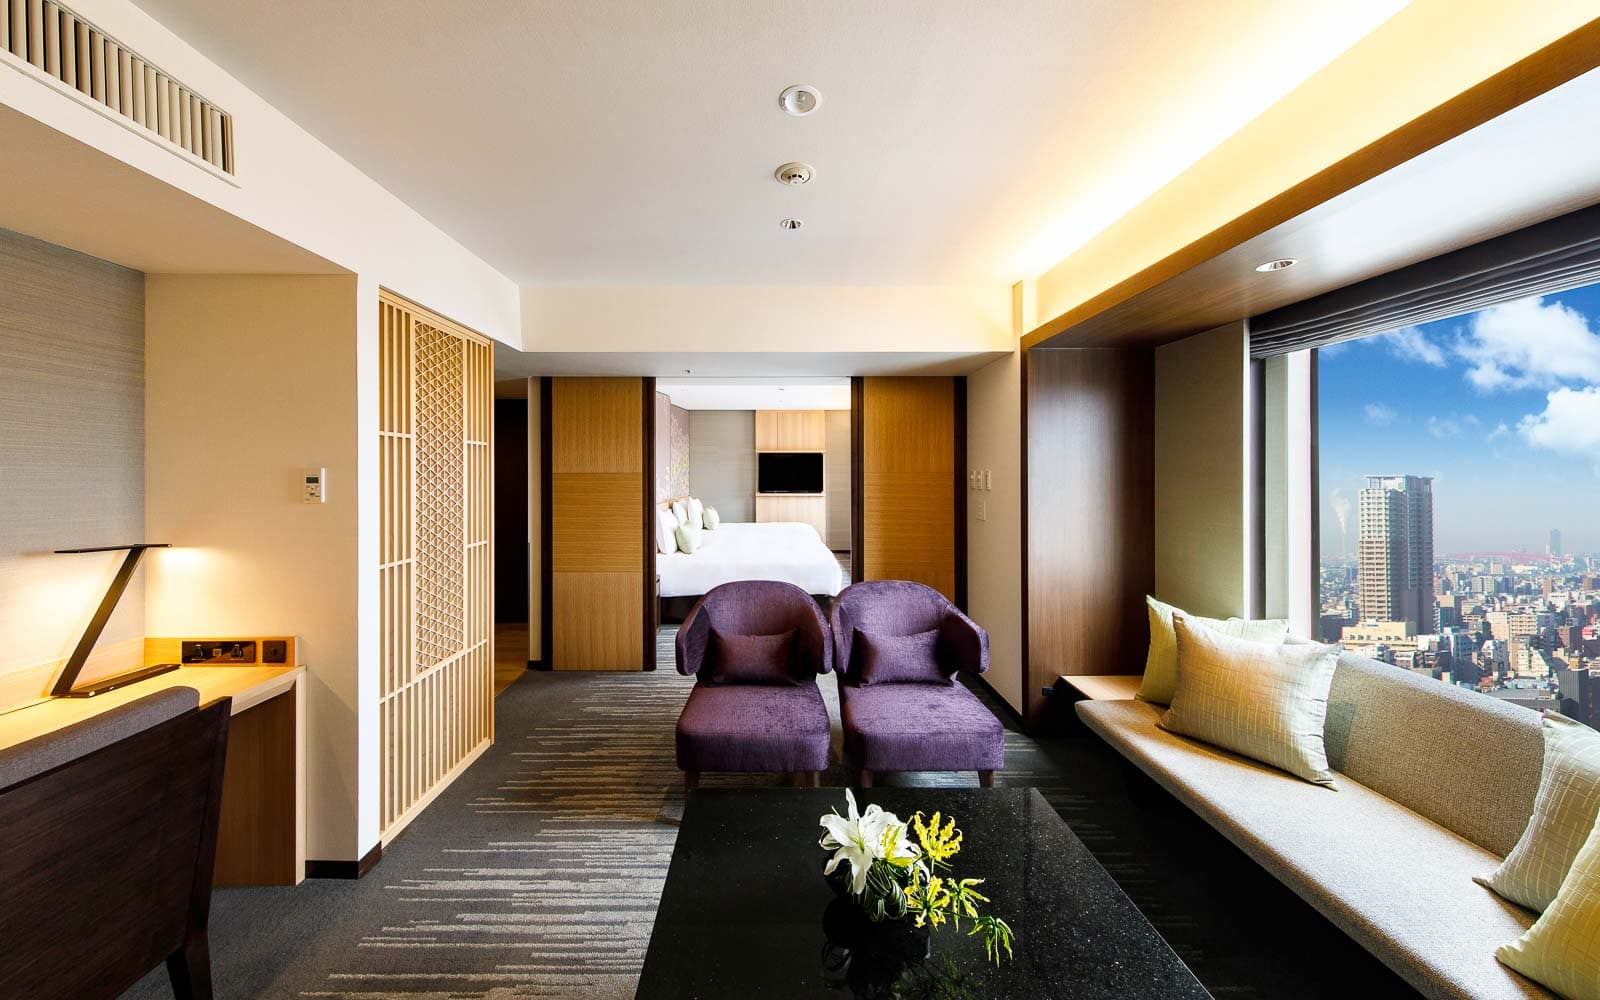 ニッコープレミアム ジュニアスイート リビングルーム / Nikko Premium Junior Suite Living Room